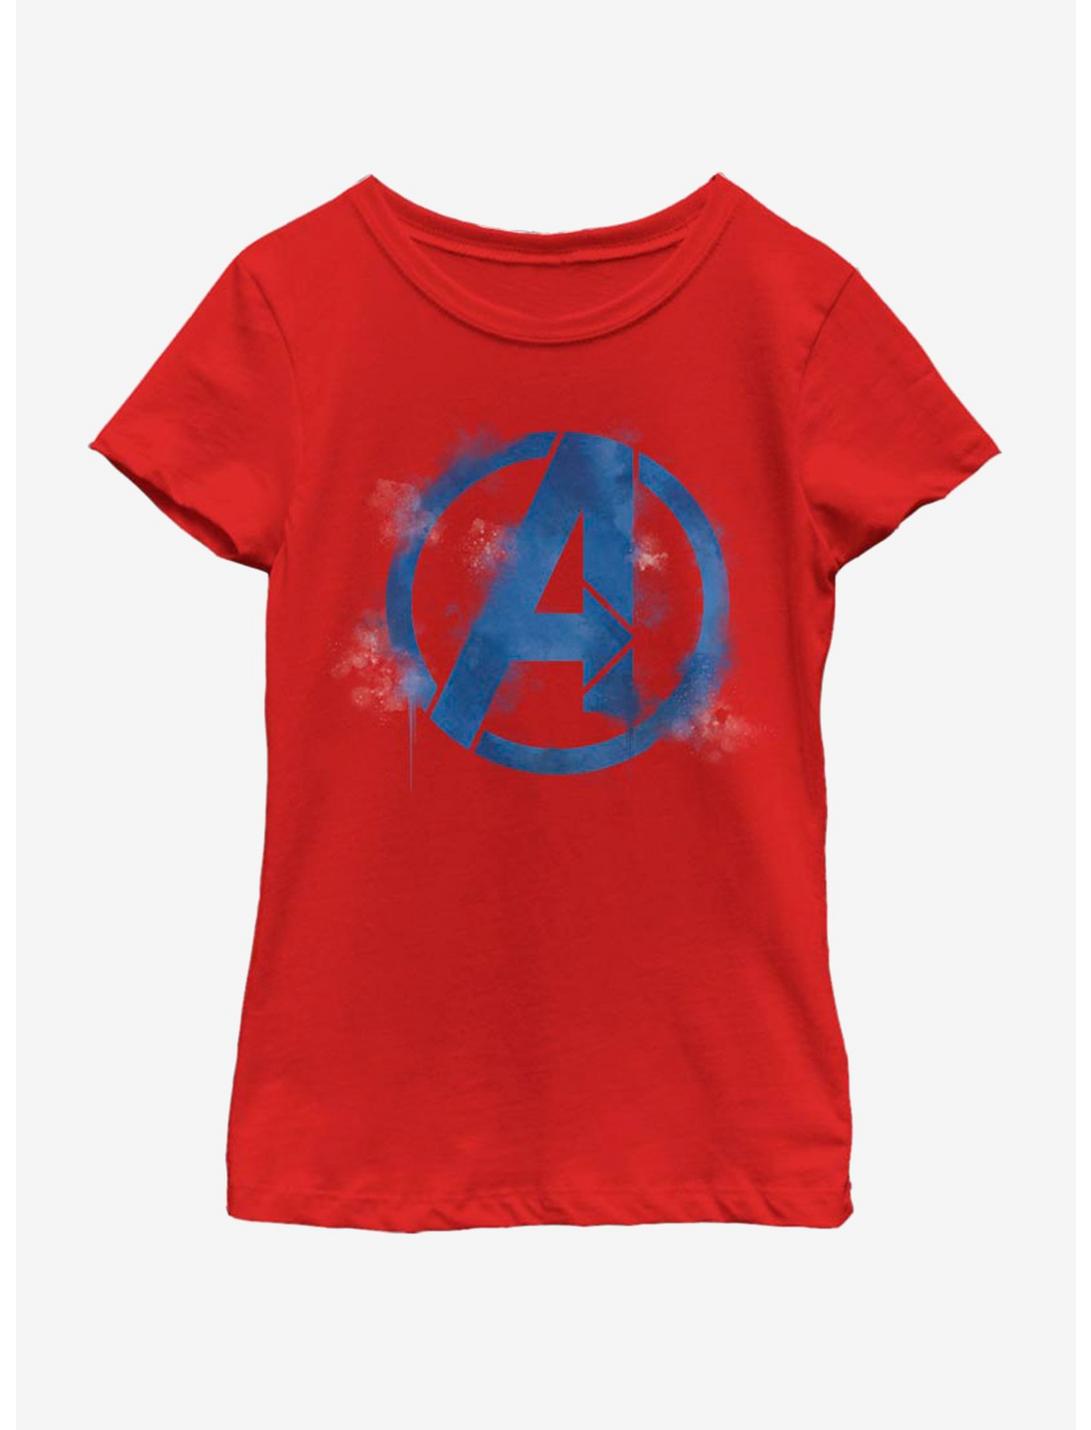 Marvel Avengers: Endgame Avengers Spray Logo Youth Girls T-Shirt, RED, hi-res